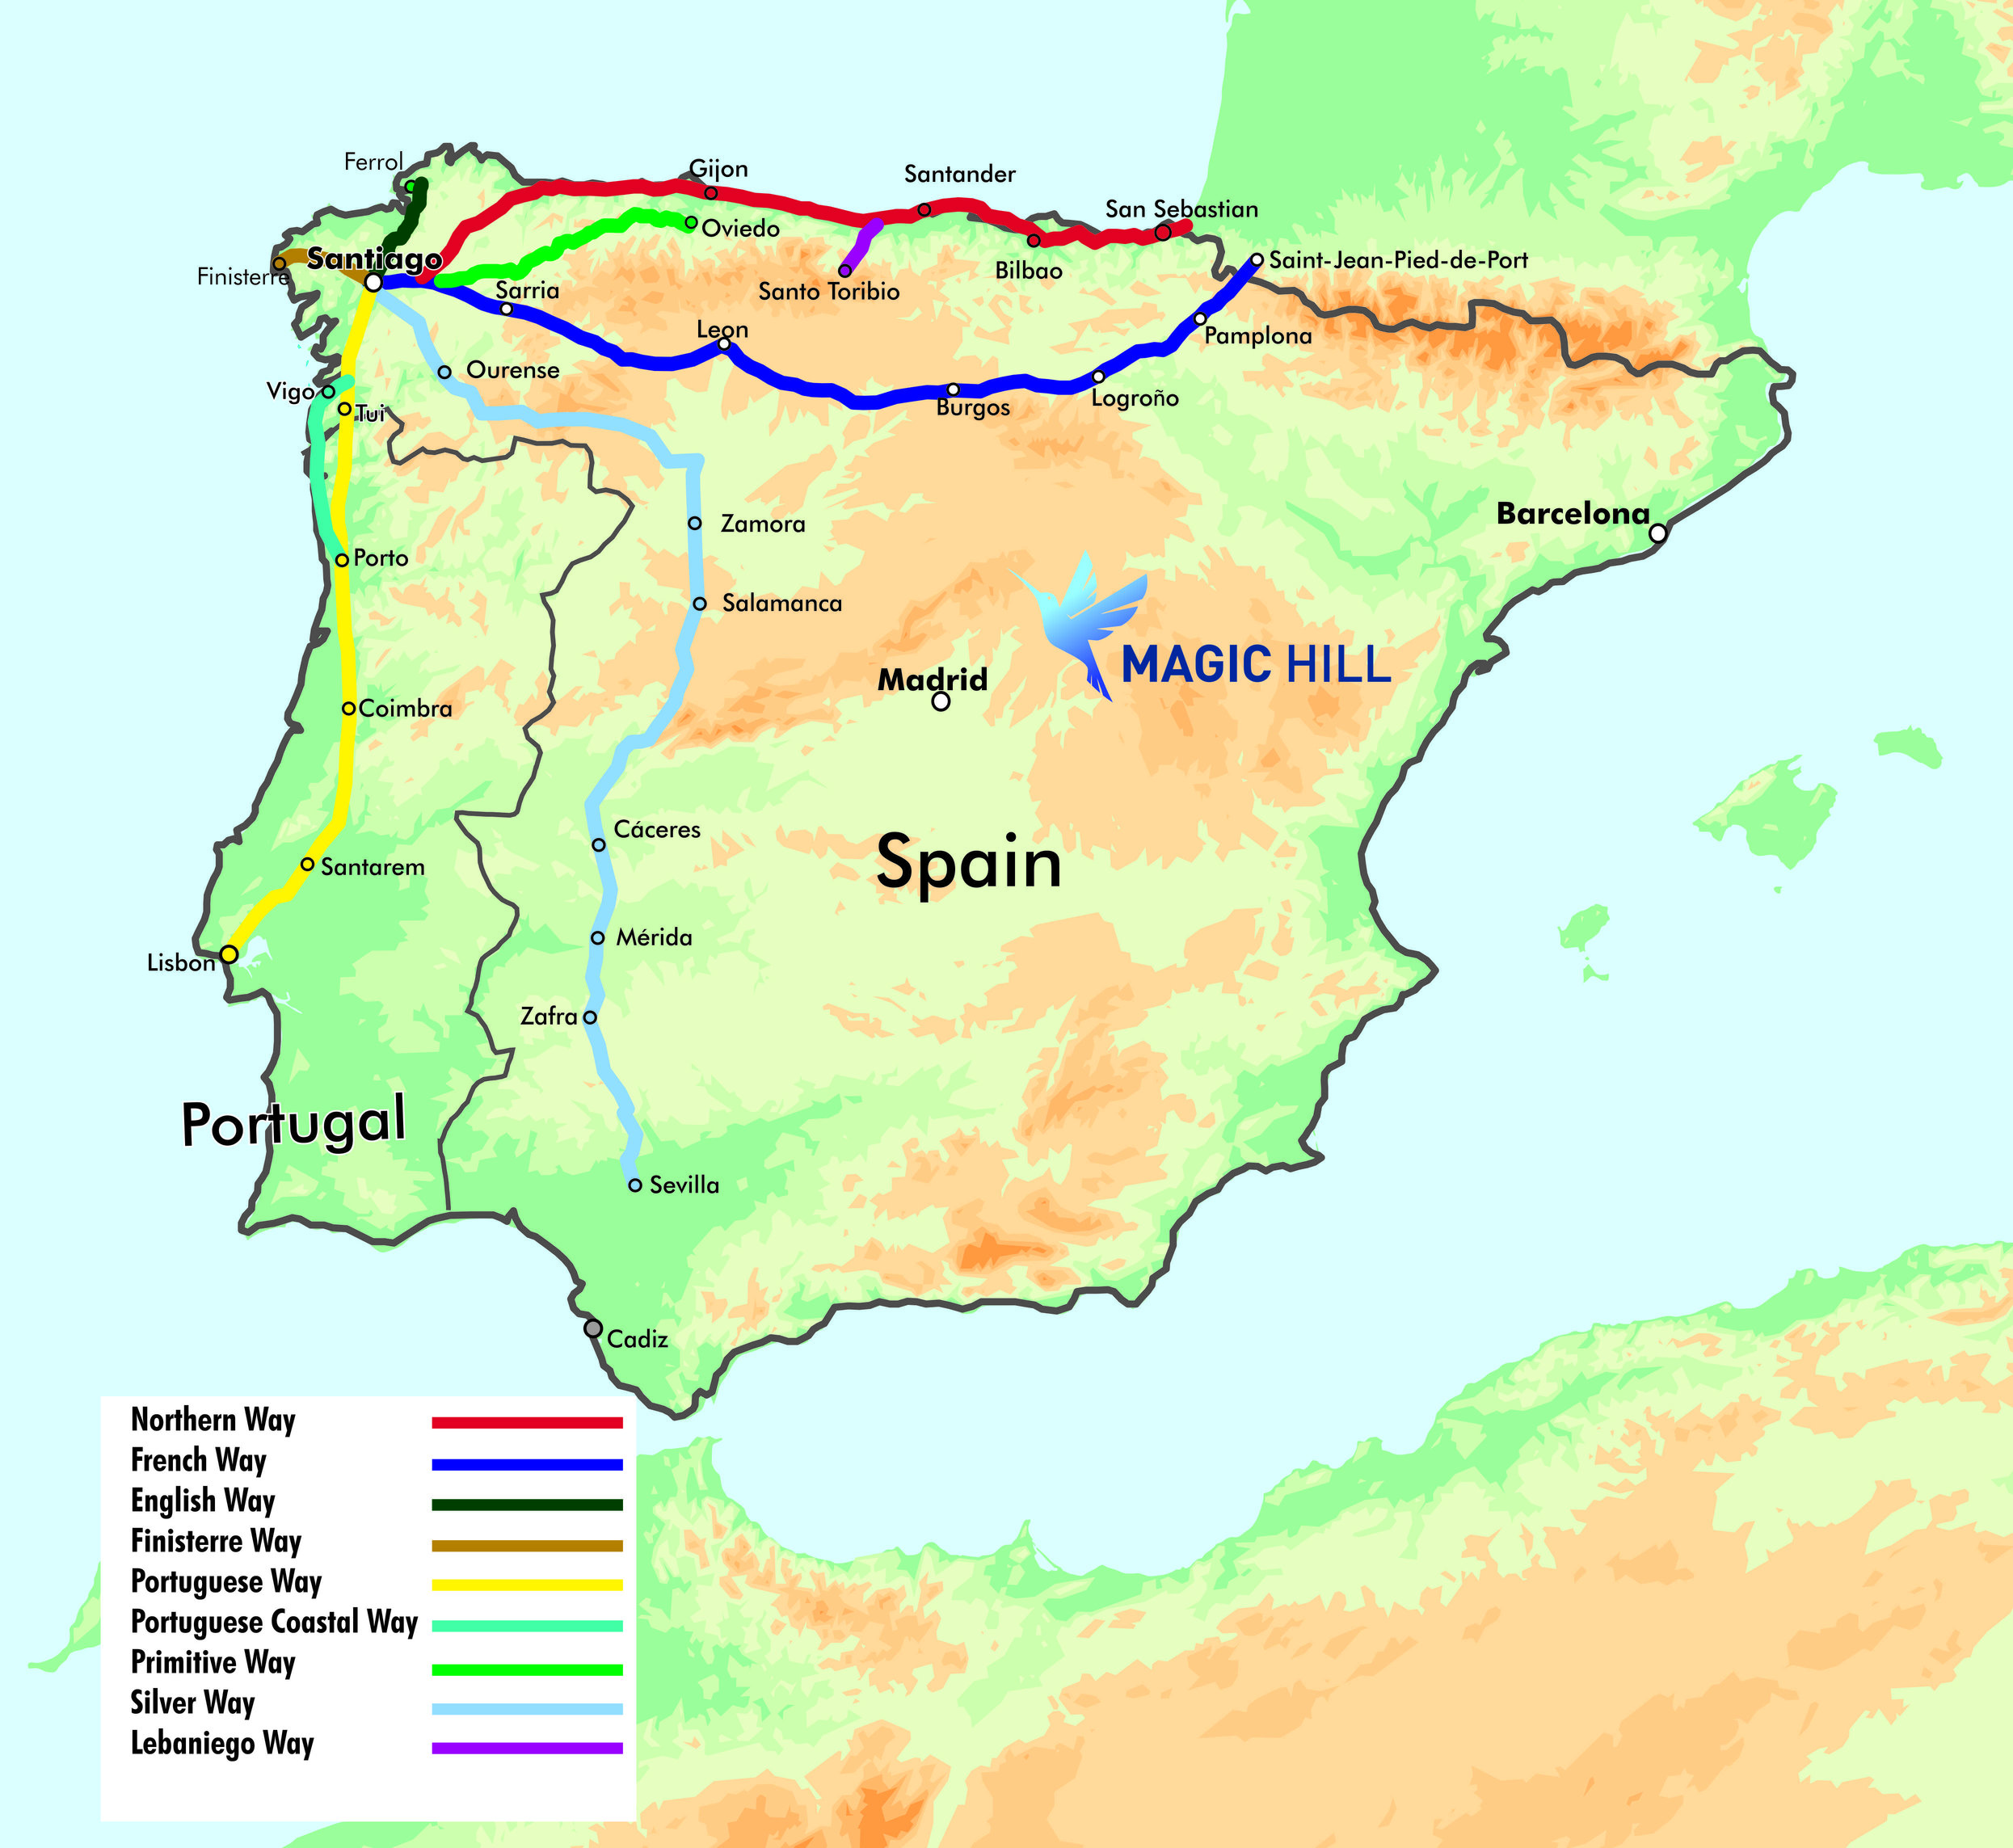 Camino Map